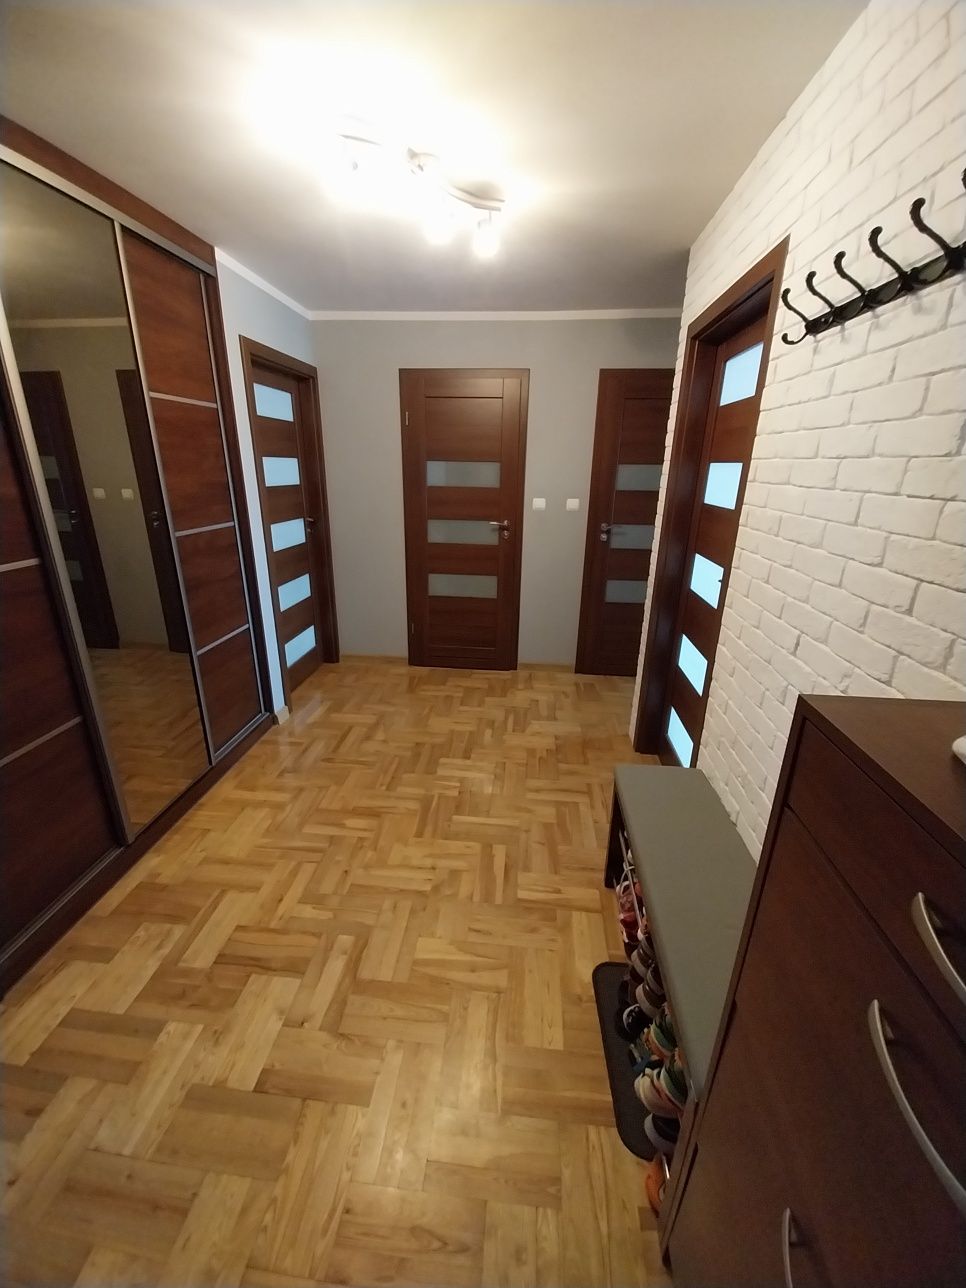 REZERWACJA - Sprzedam mieszkanie ul.Sadowa 73 m2